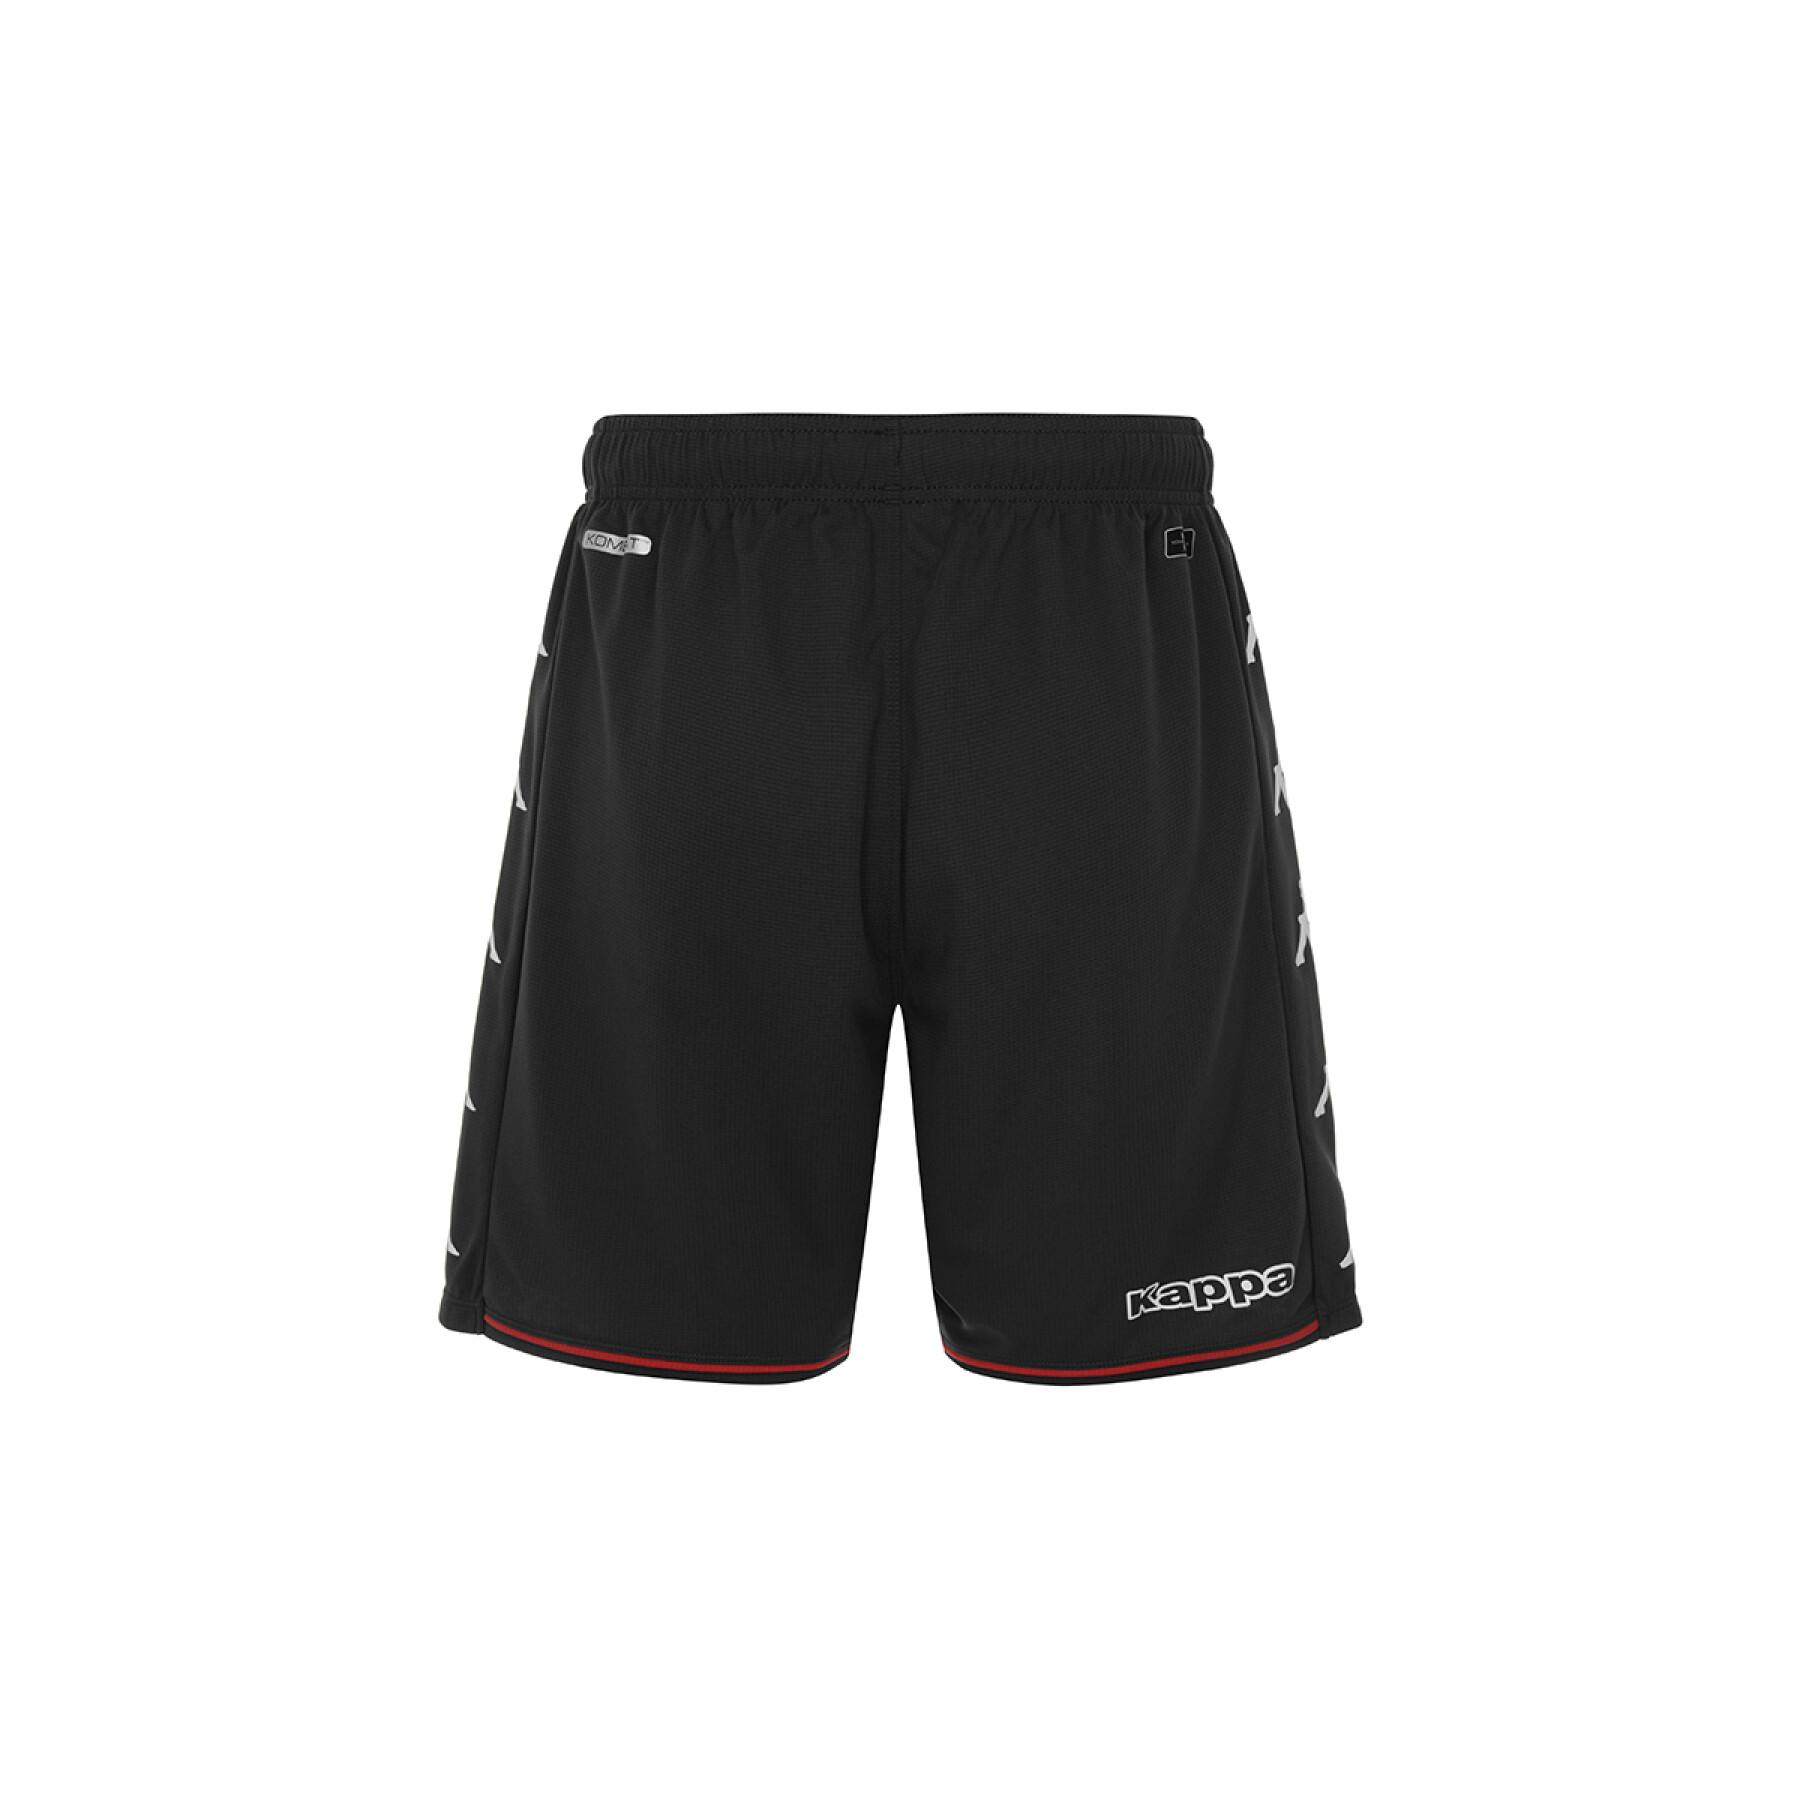 Outdoor-Shorts AS Monaco 2021/22